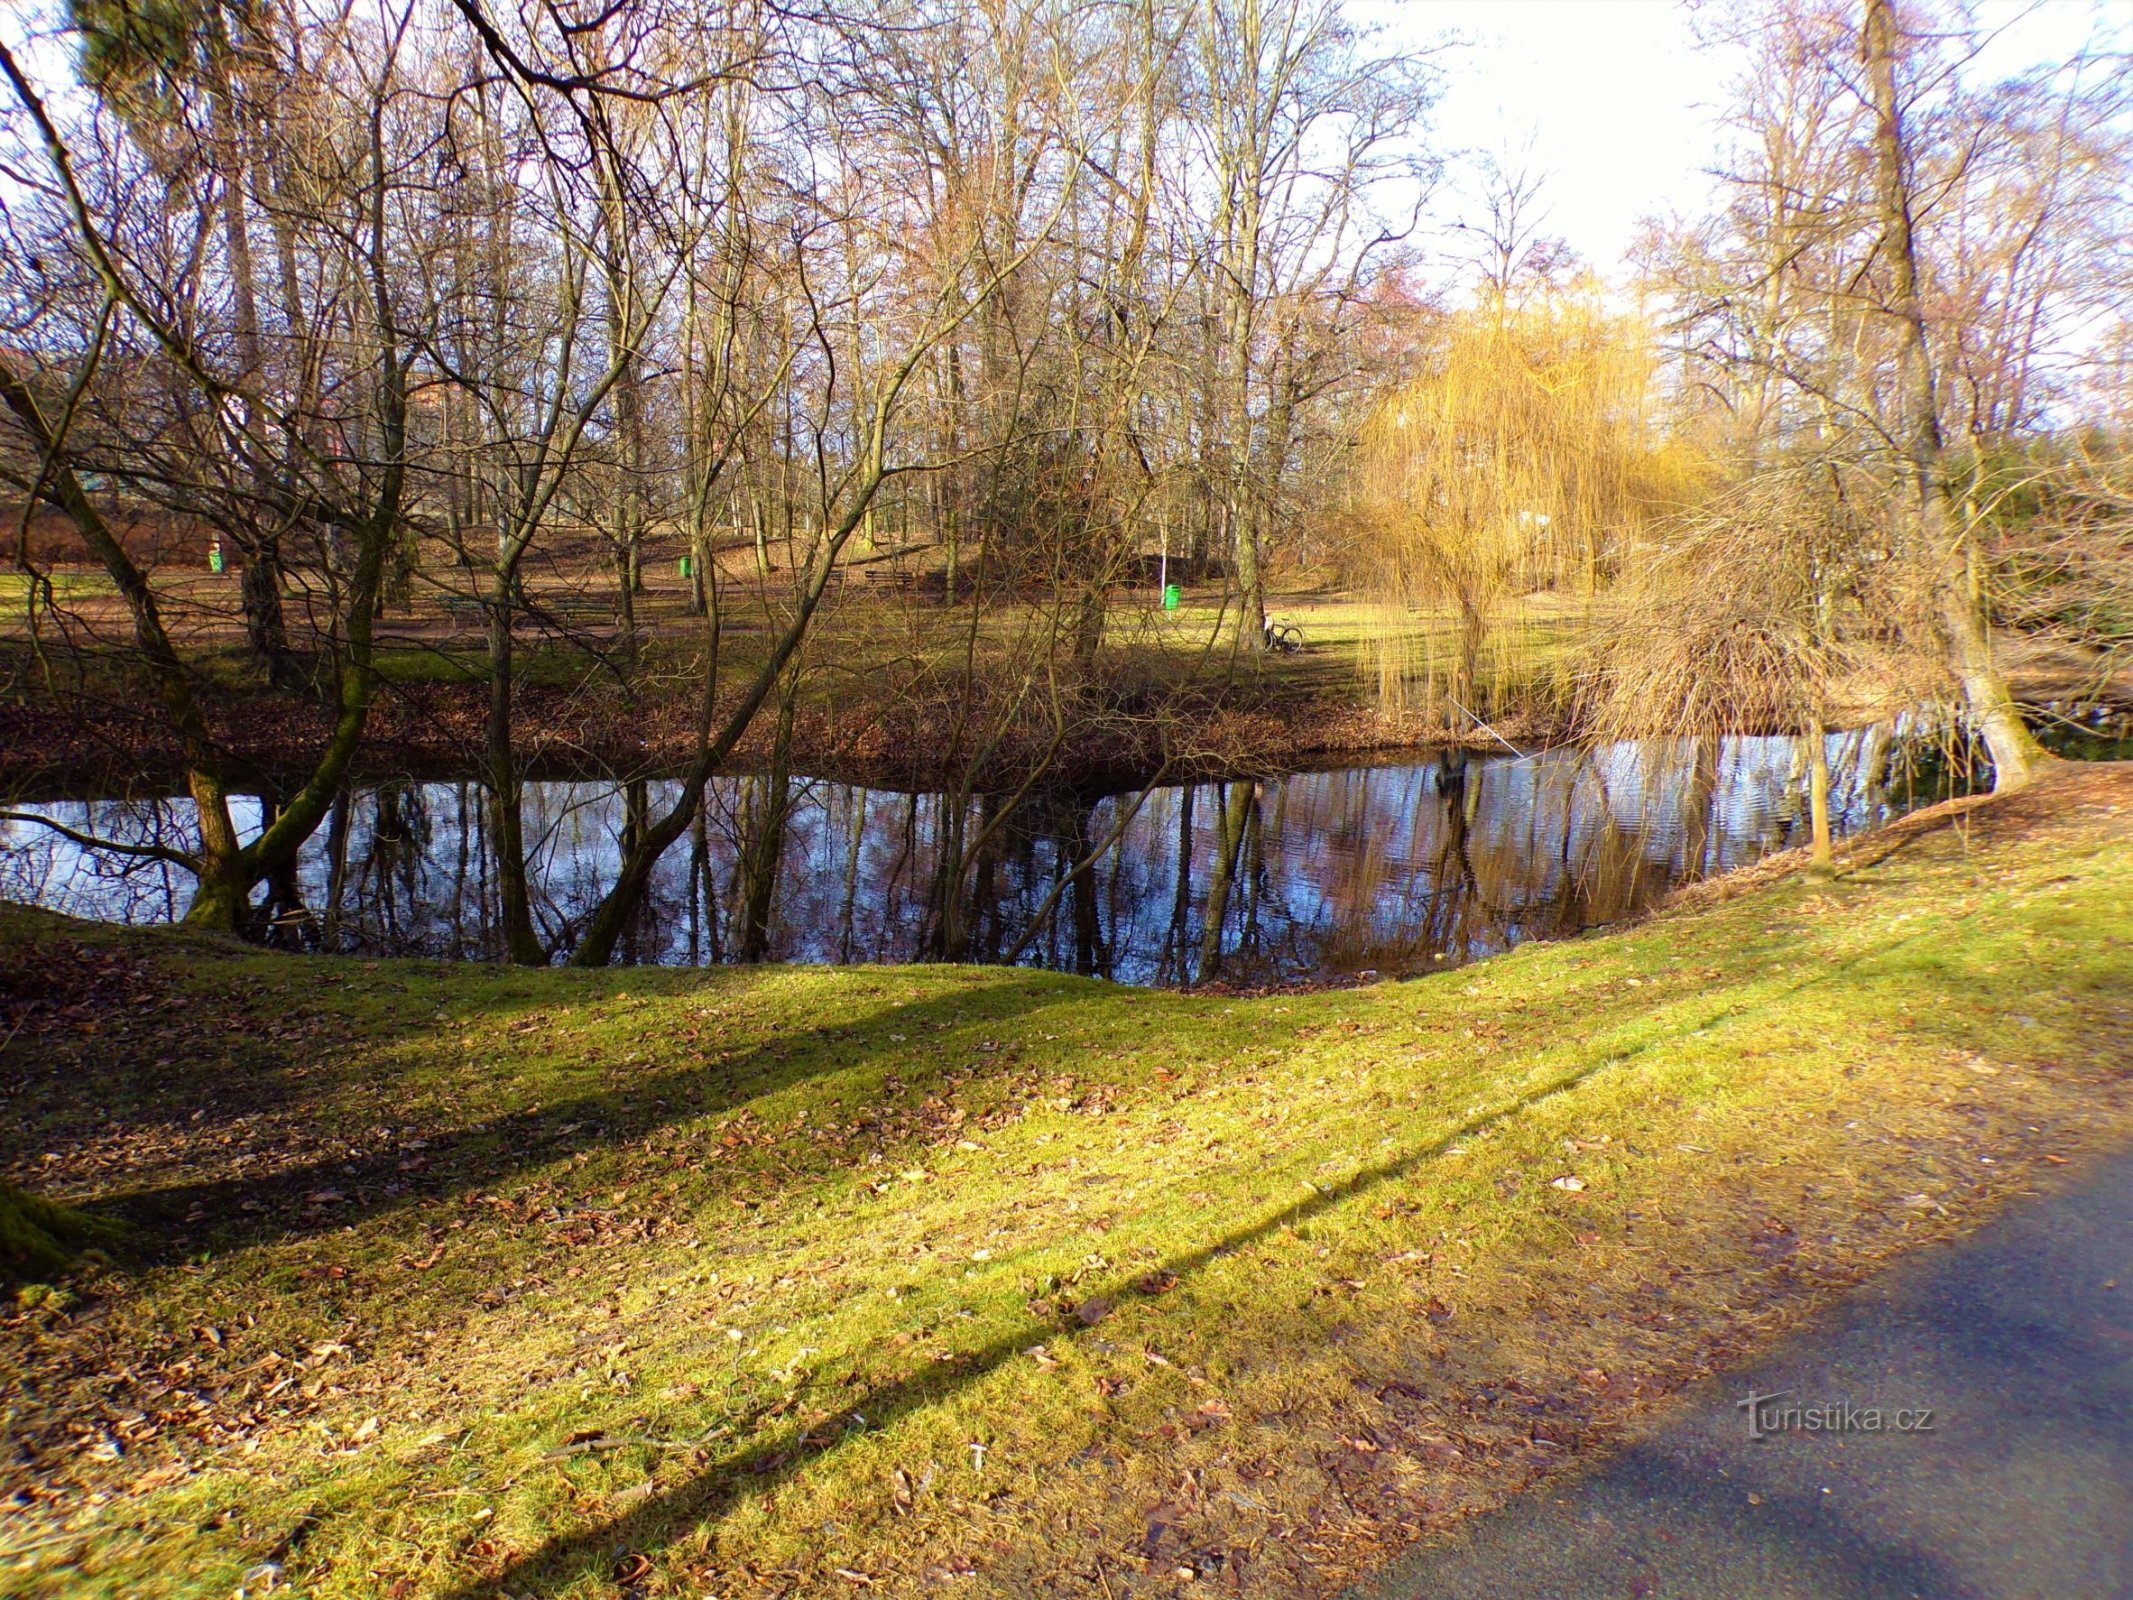 Hồ trong công viên Vinice (Pardubice, 16.2.2022/XNUMX/XNUMX)